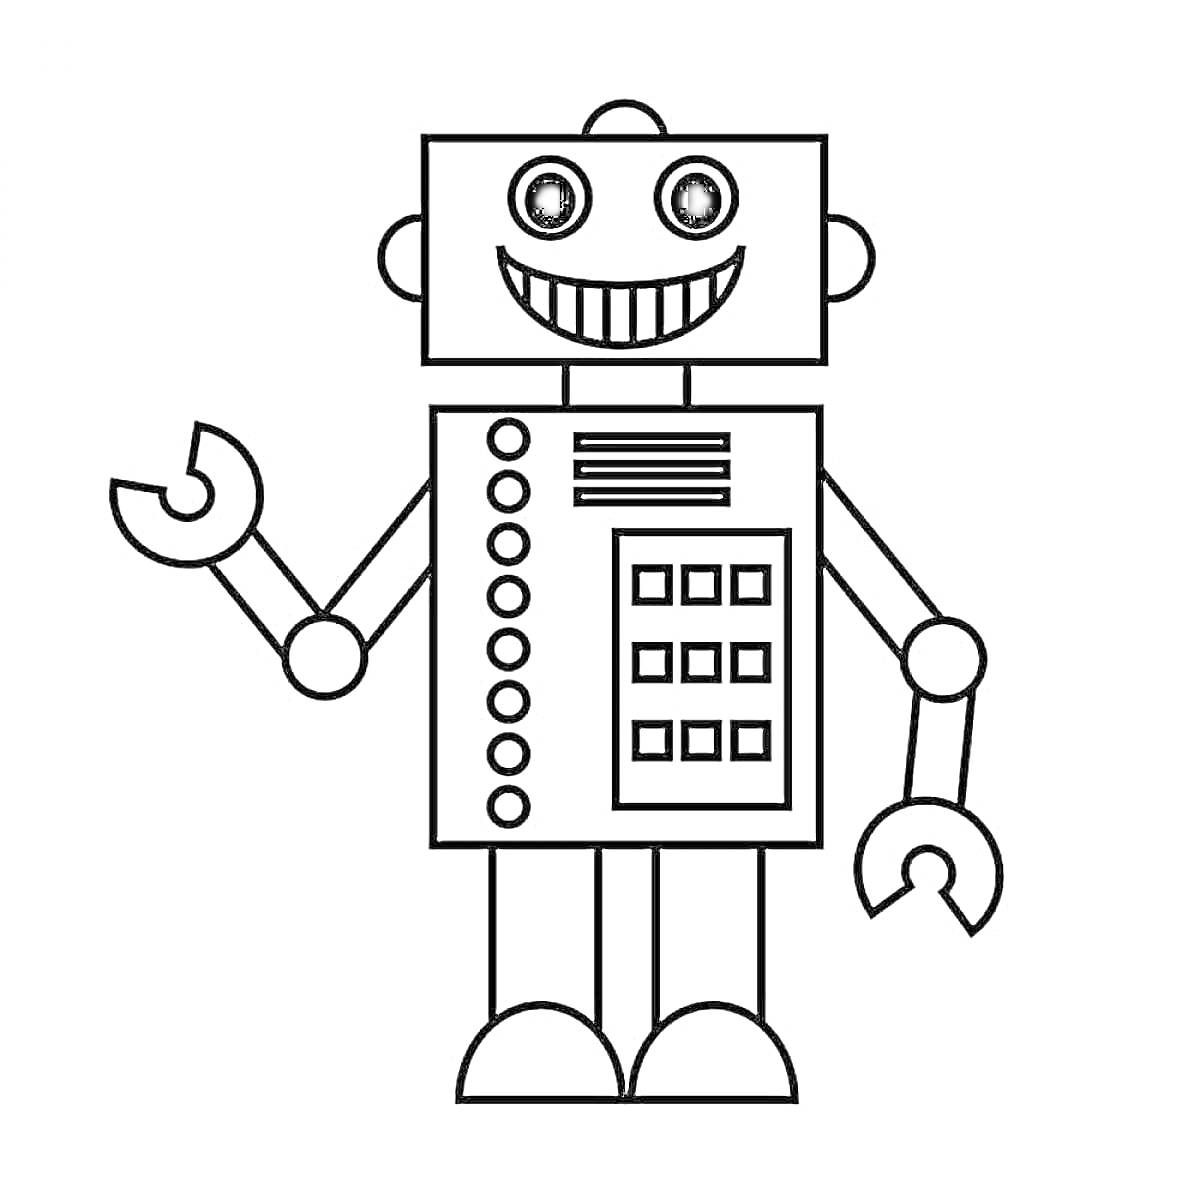 Раскраска Робот с круглыми глазами, широкой улыбкой, двумя круглыми руками и ногами